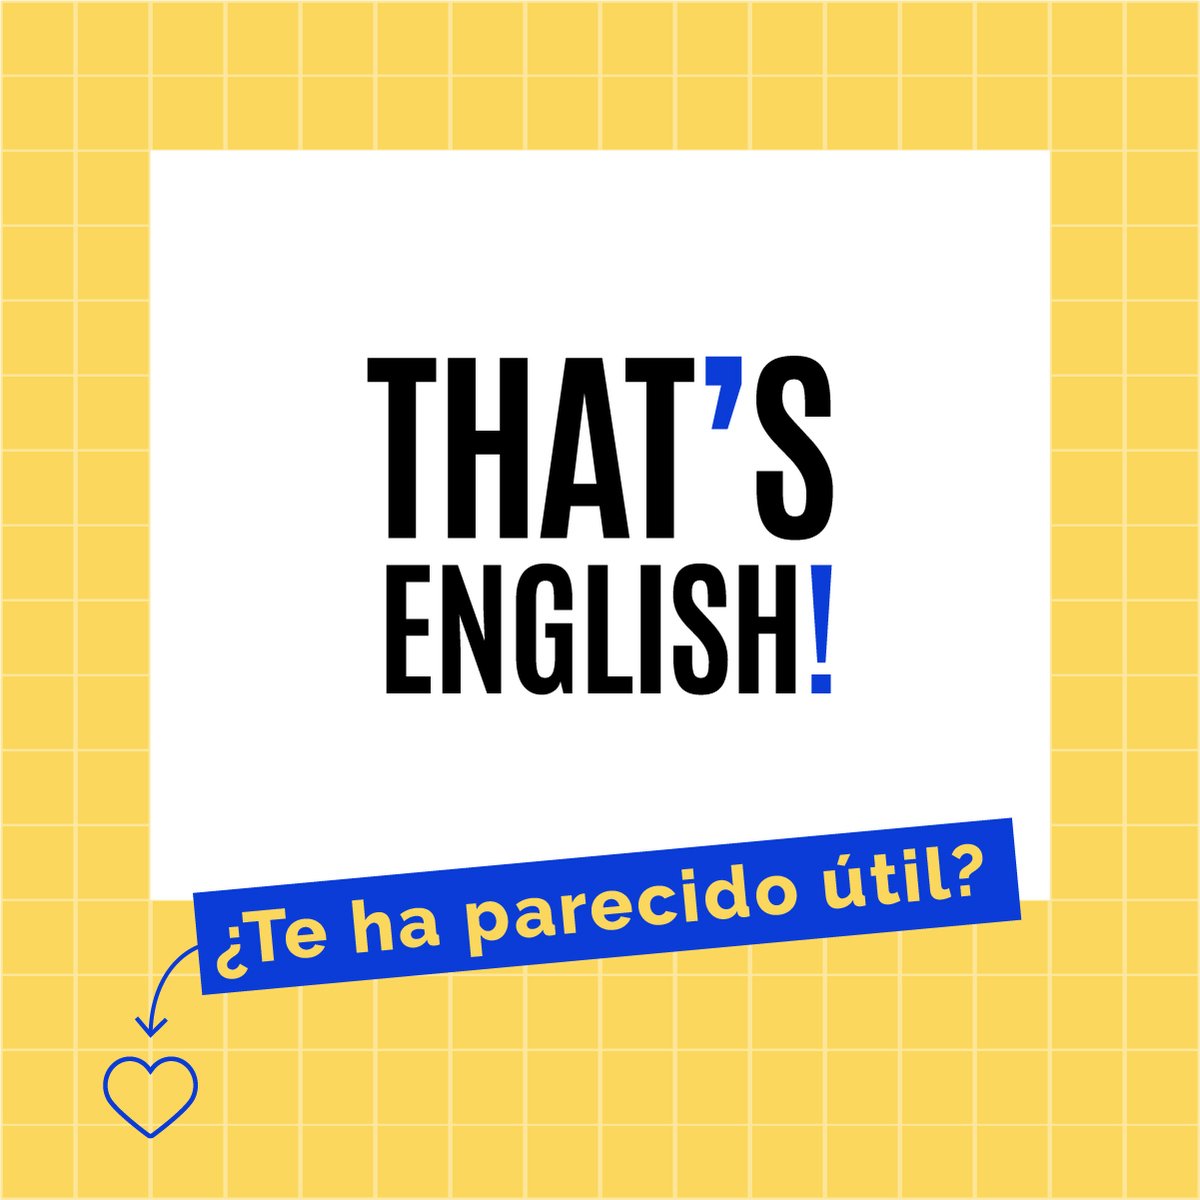 Hoy vas a aprender los usos del second conditional en inglés 👇

¡Guarda este post y ponte a practicar!

#ThatsEnglish #Grammar #Conditionals #SecondConditional #AprendeInglés